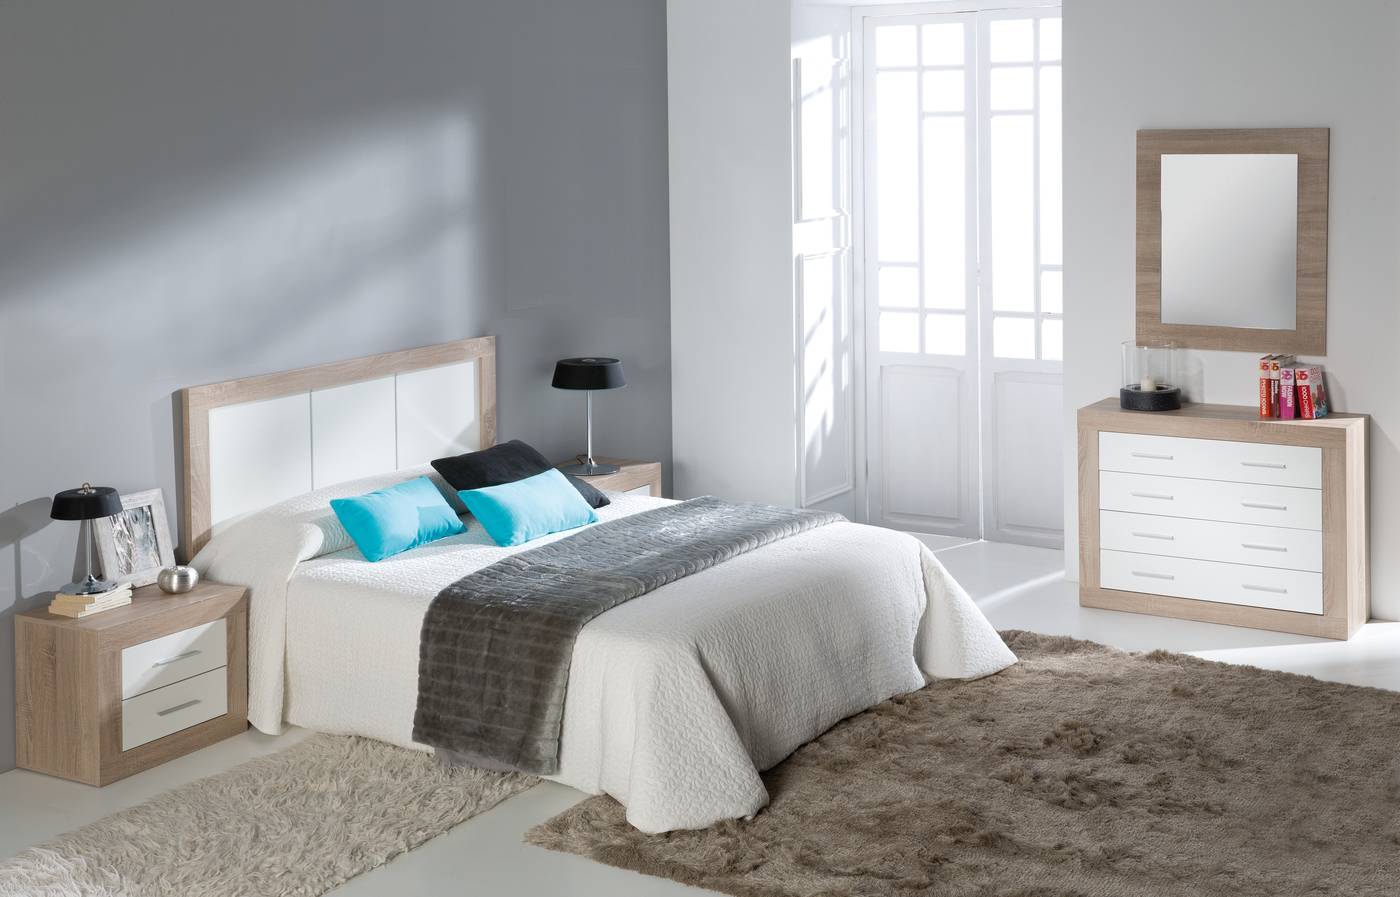 Dormitorio Blanco-Roble 2C - Dormitorio de matrimonio color roble claro combinado con blanco, con 2 mesitas de 2 cajones